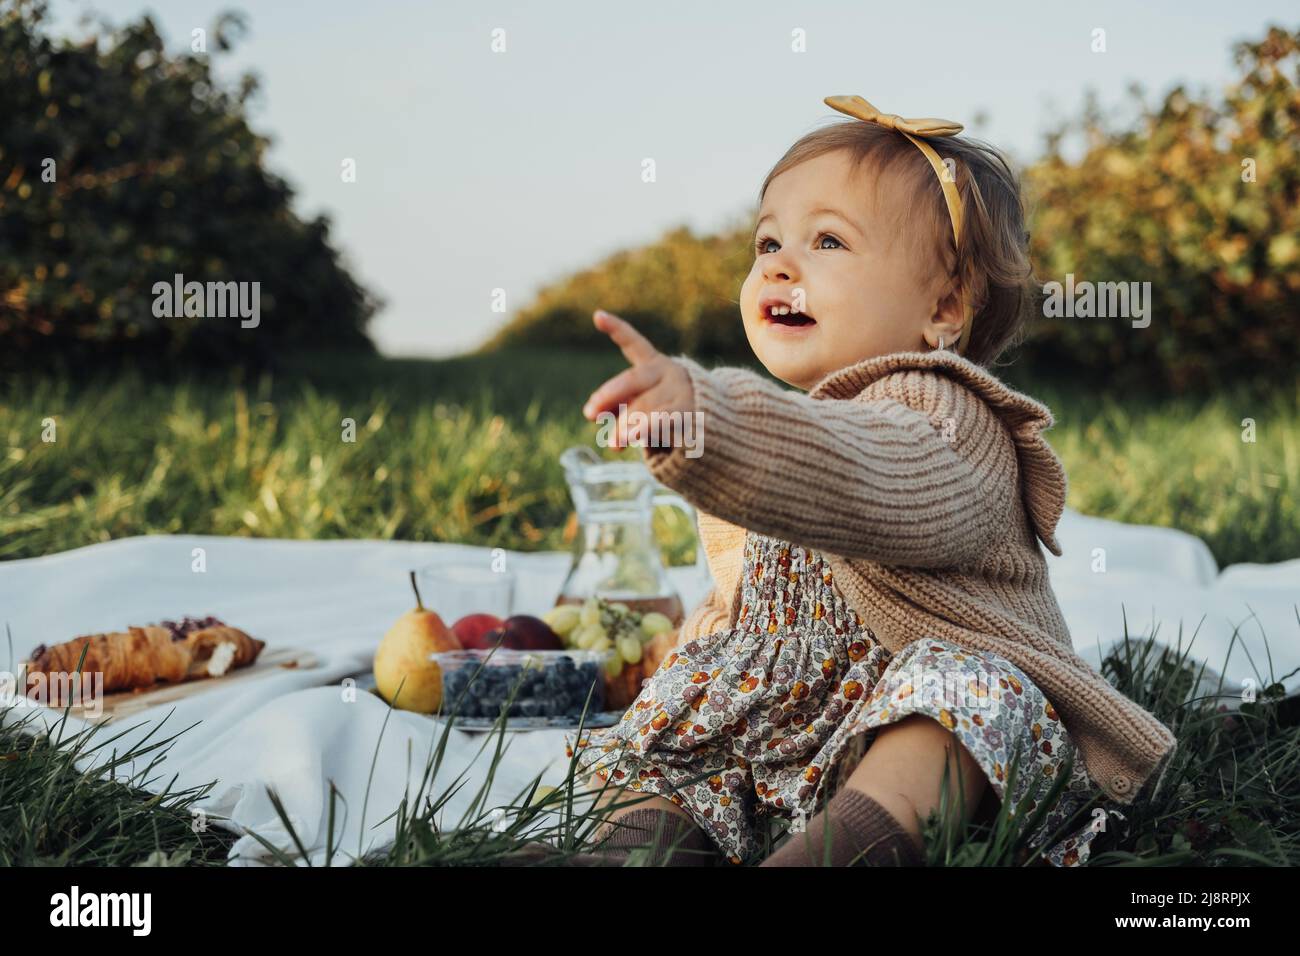 Porträt eines kleinen Mädchens, das auf einem Plaid auf einem Picknick im Freien bei Sonnenuntergang sitzt Stockfoto